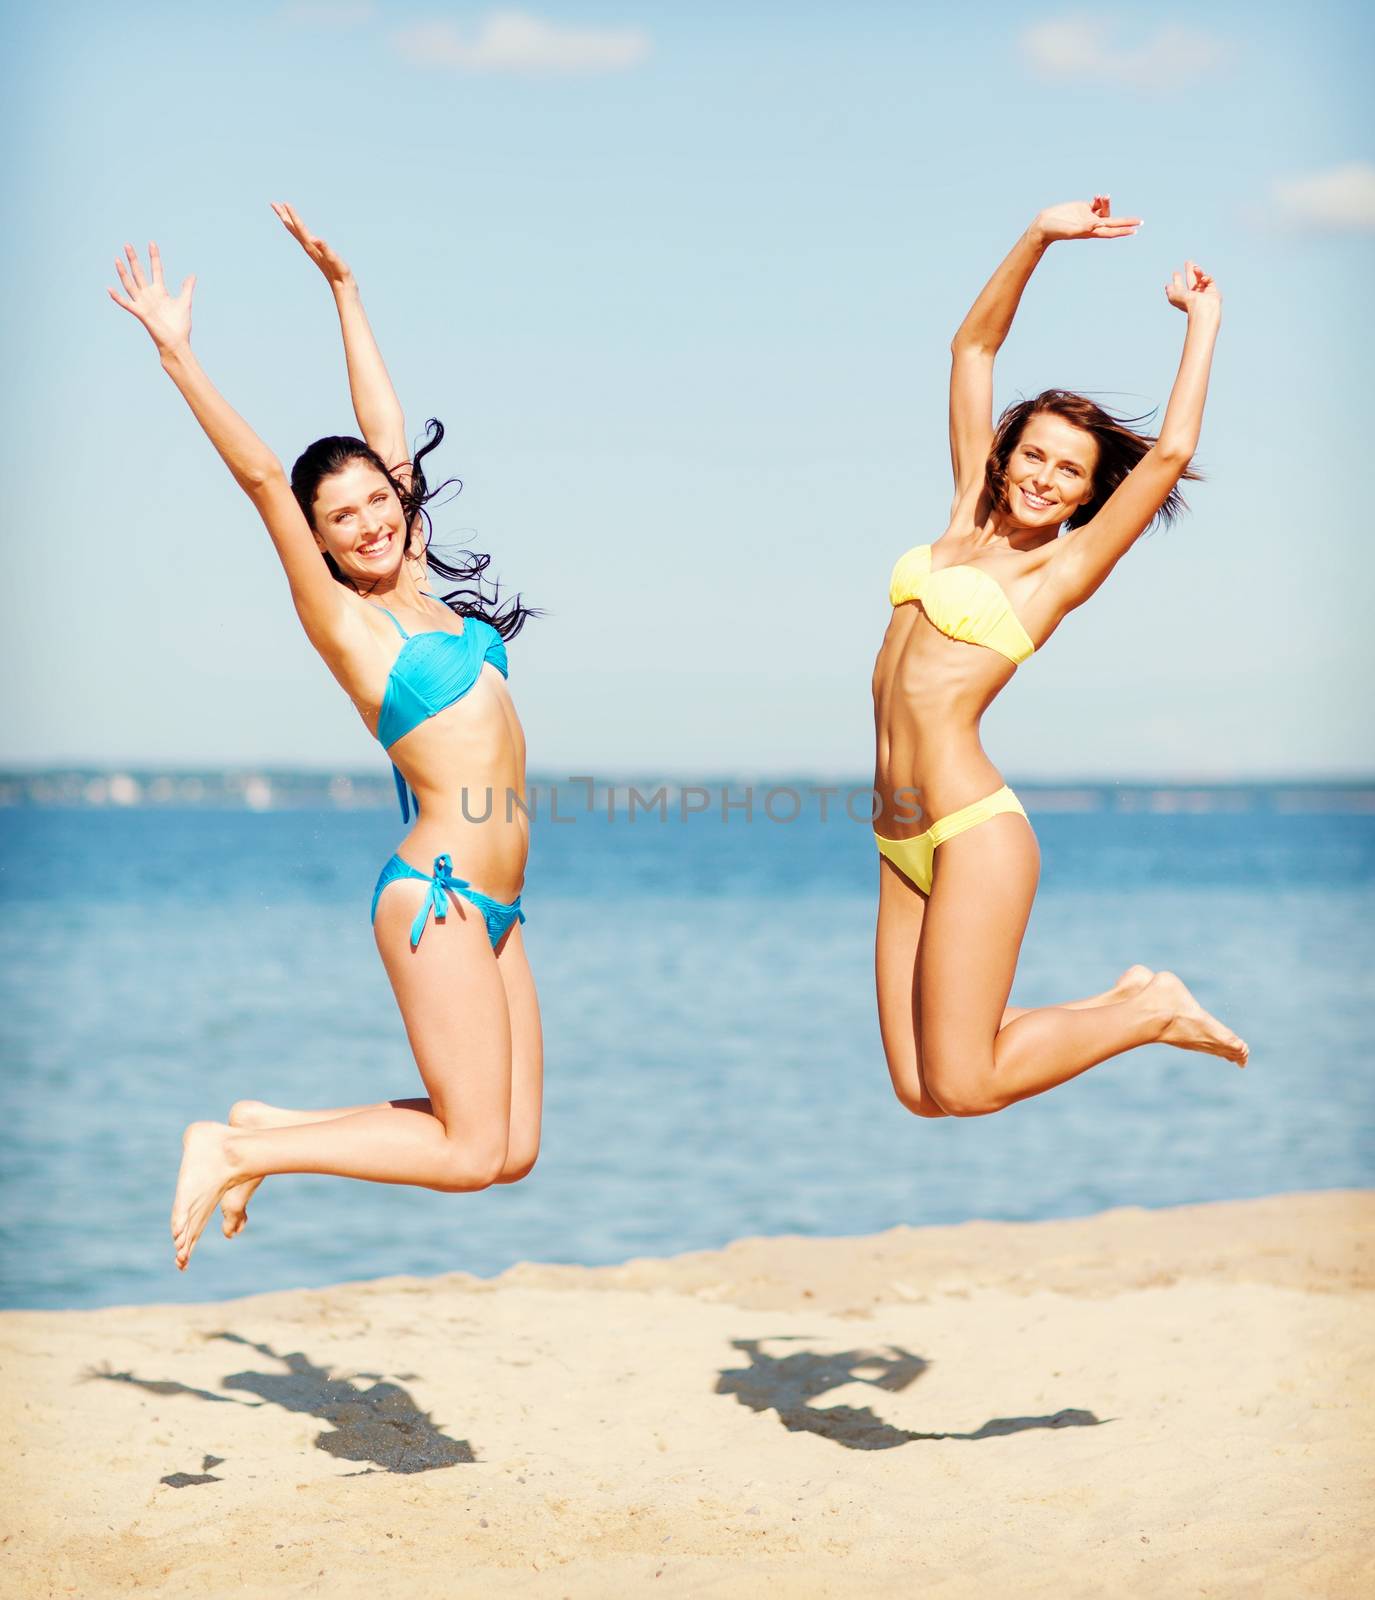 girls in bikini jumping on the beach by dolgachov